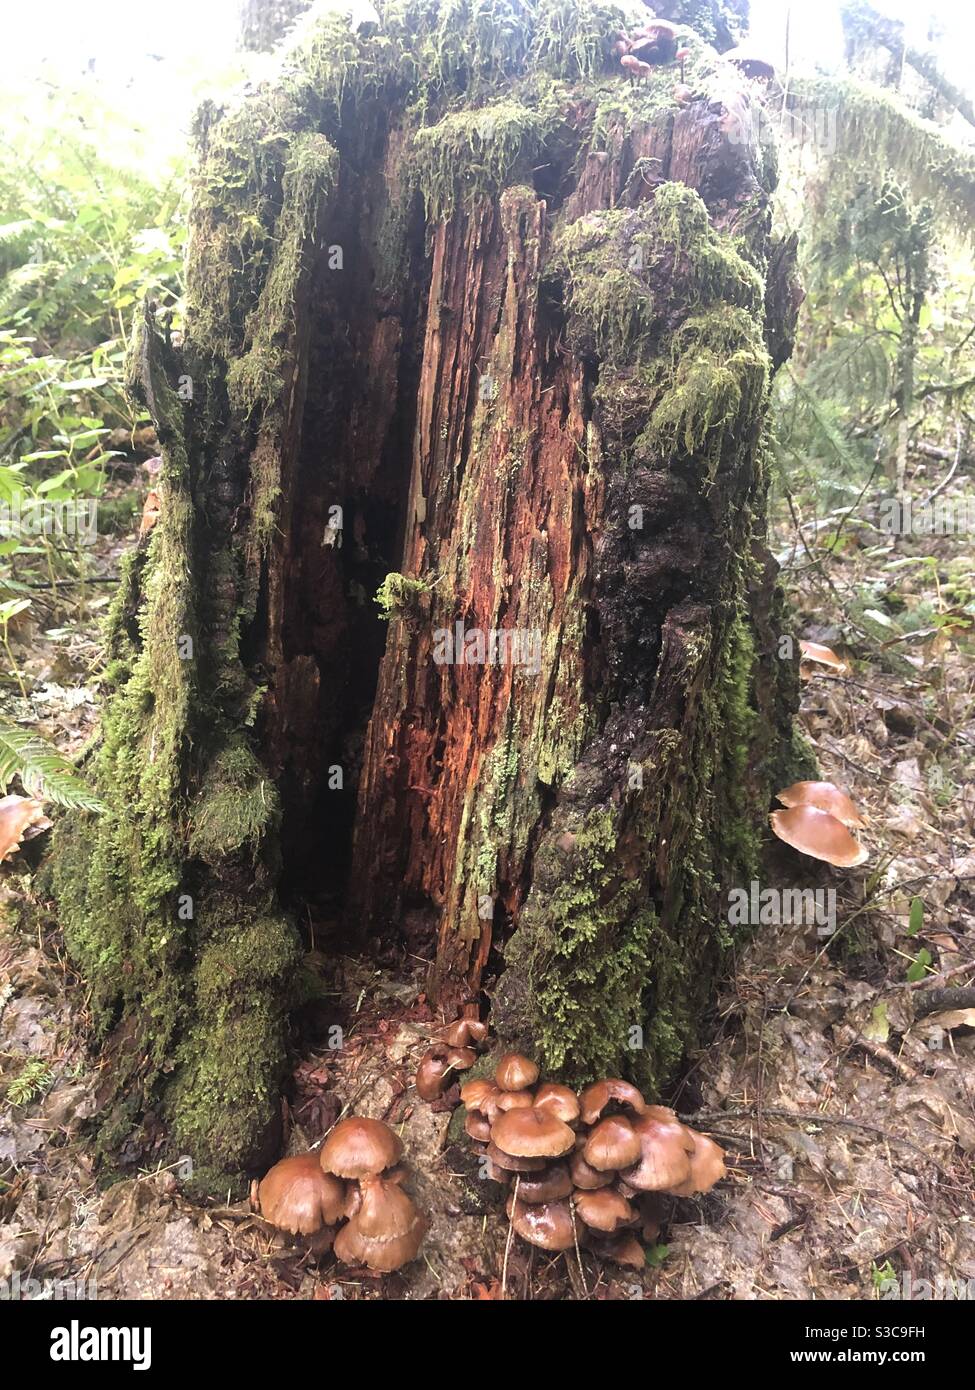 Toter Baumstamm Schrein im Wald am Silver Falls State Park. Cluster von Pilzen auf dem Waldboden an der Basis eines toten Baumstamms. Stockfoto